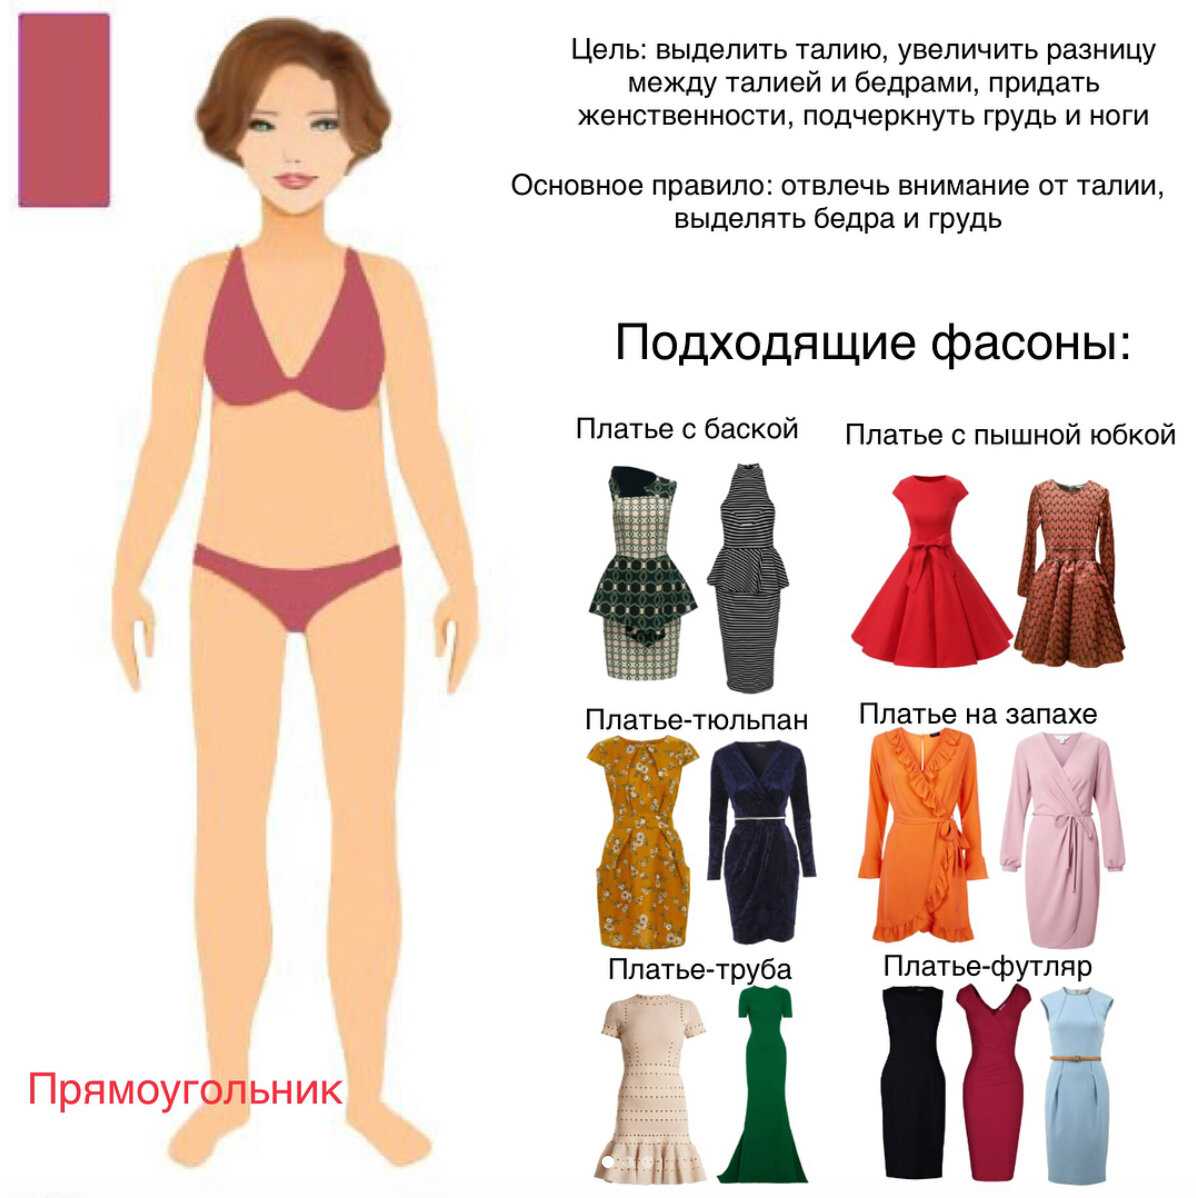 Фигура у каждой женщины своя и соответственно гардероб стоит также подбирать индивидуально. Потому что одежда – это то, на что первое обращают внимание